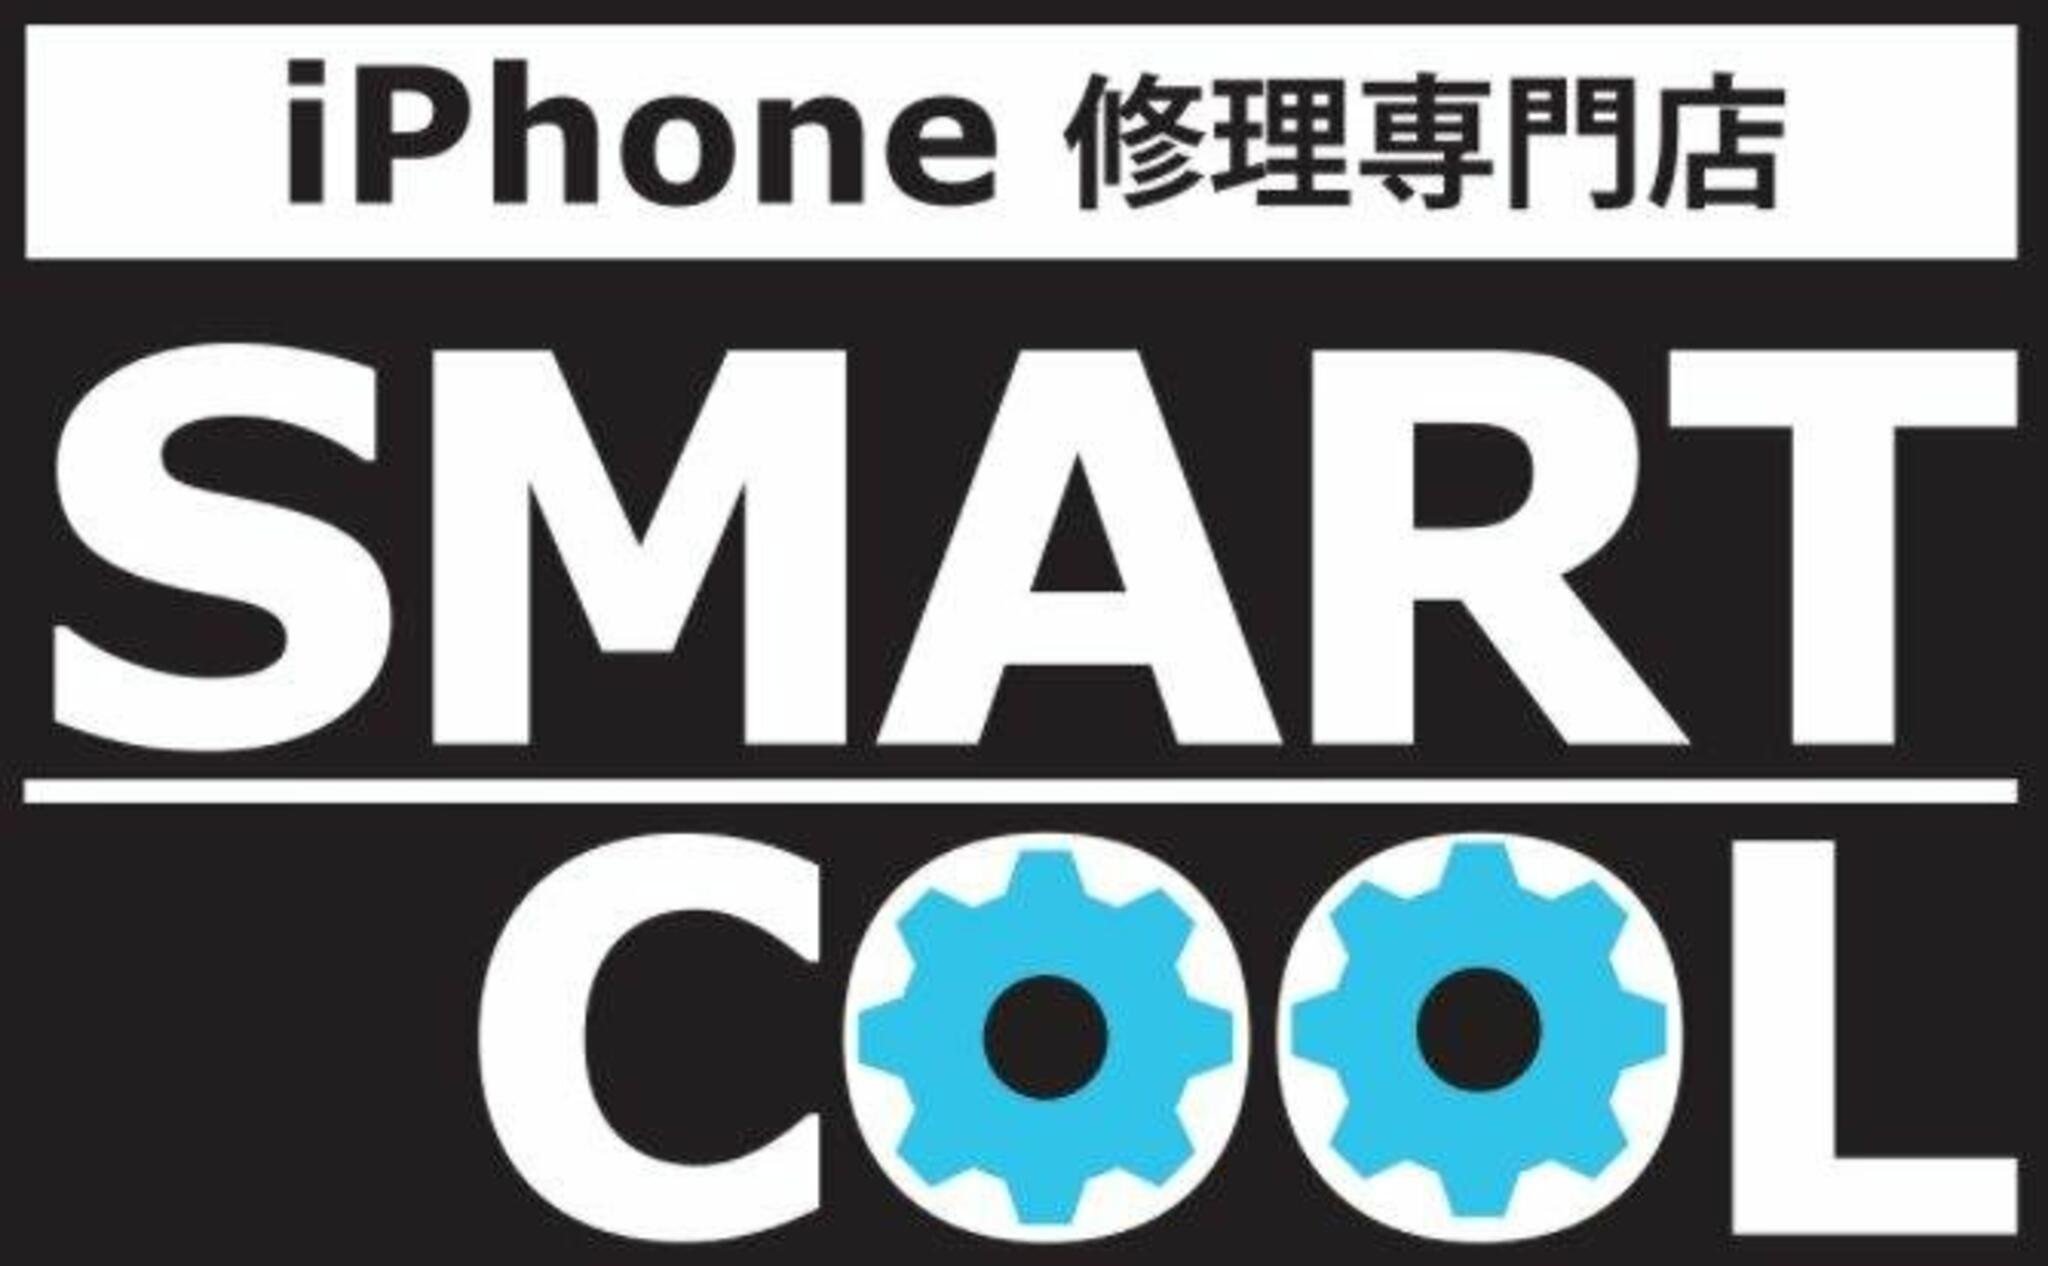 iPhone・iPad・Switch修理店 スマートクール イオンモール広島祇園店からのお知らせ(不具合のある端末お持ち込みください)に関する写真